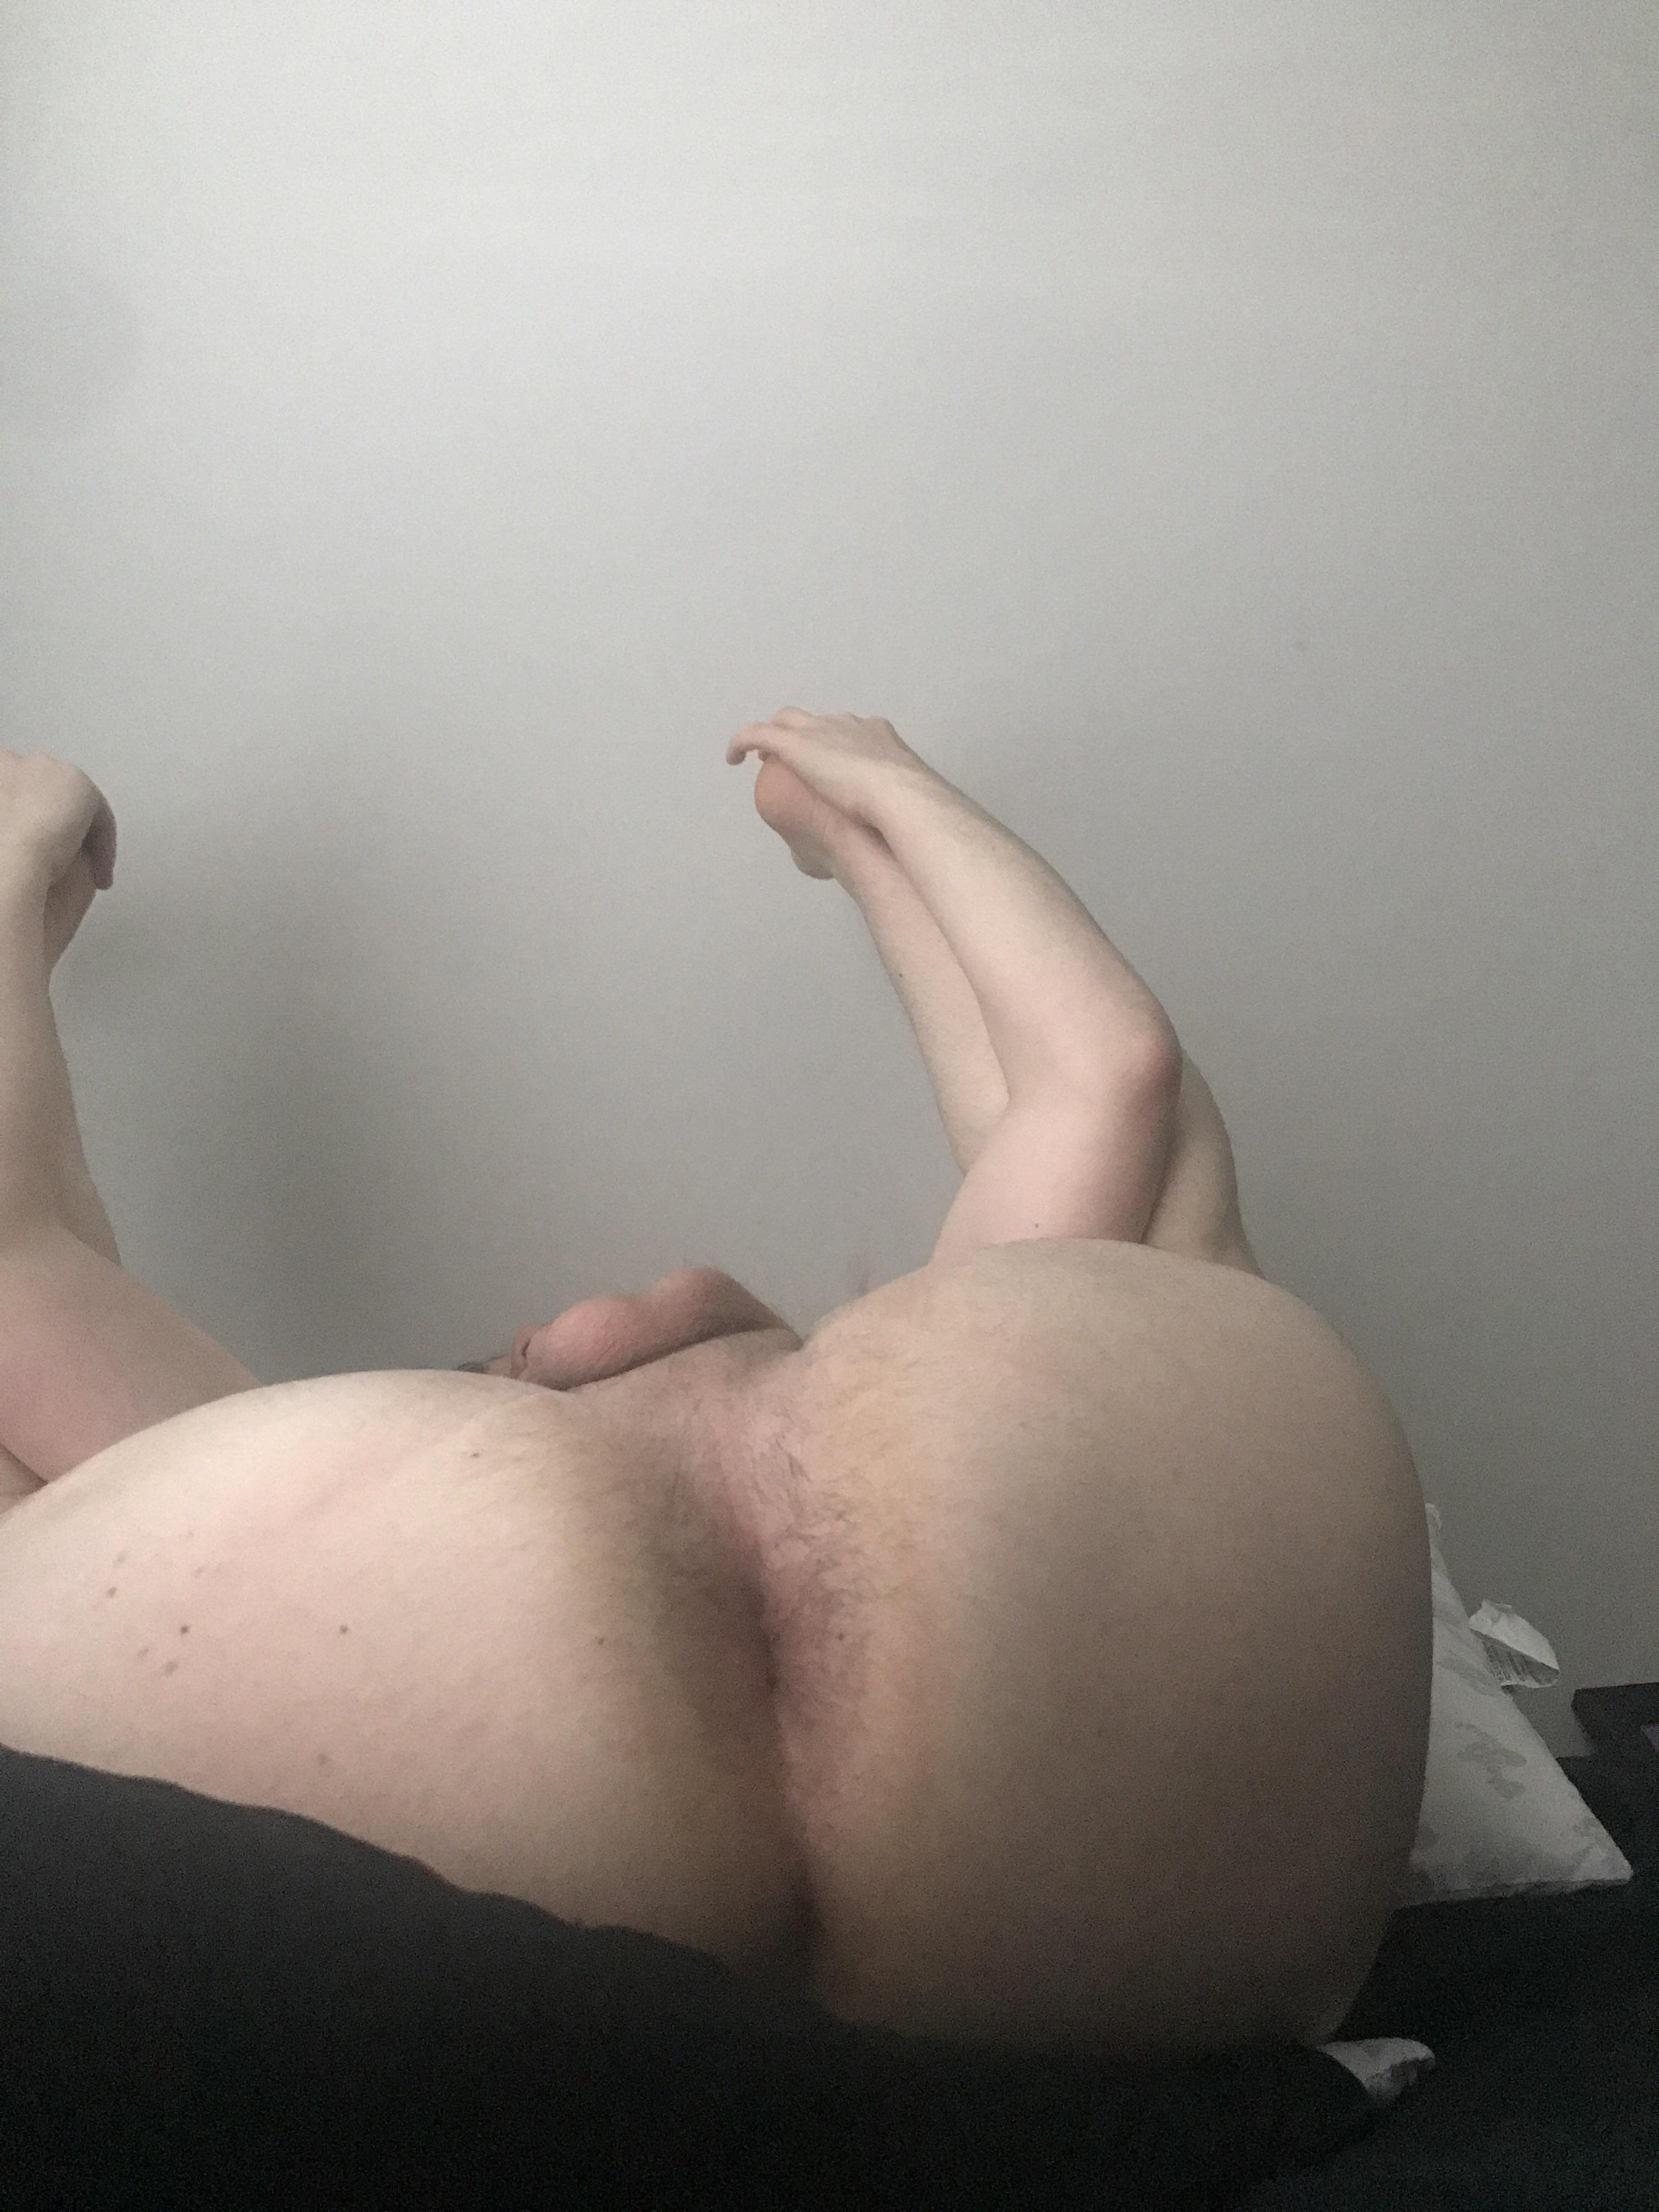 I don't know how to take an ass pic, how's this one?